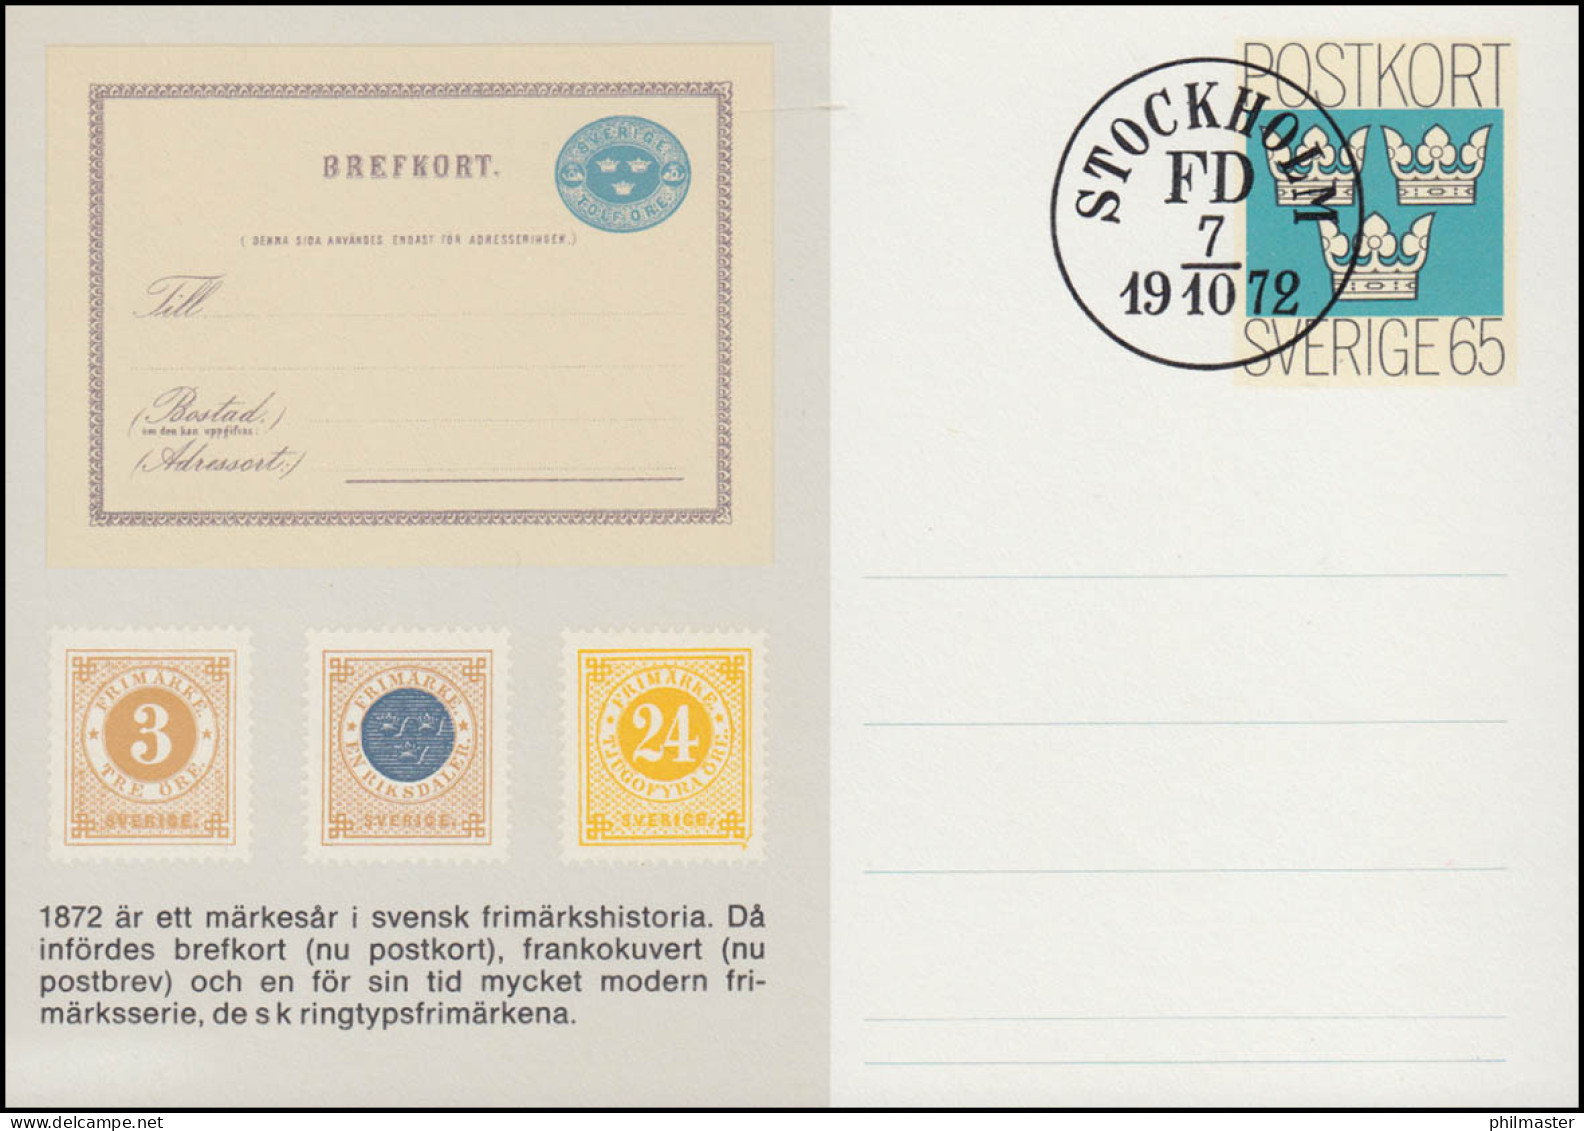 Schweden Postkarte P 93 Tag Der Briefmarke 1972, FDC Stockholm FD 7.10.72 - Ganzsachen